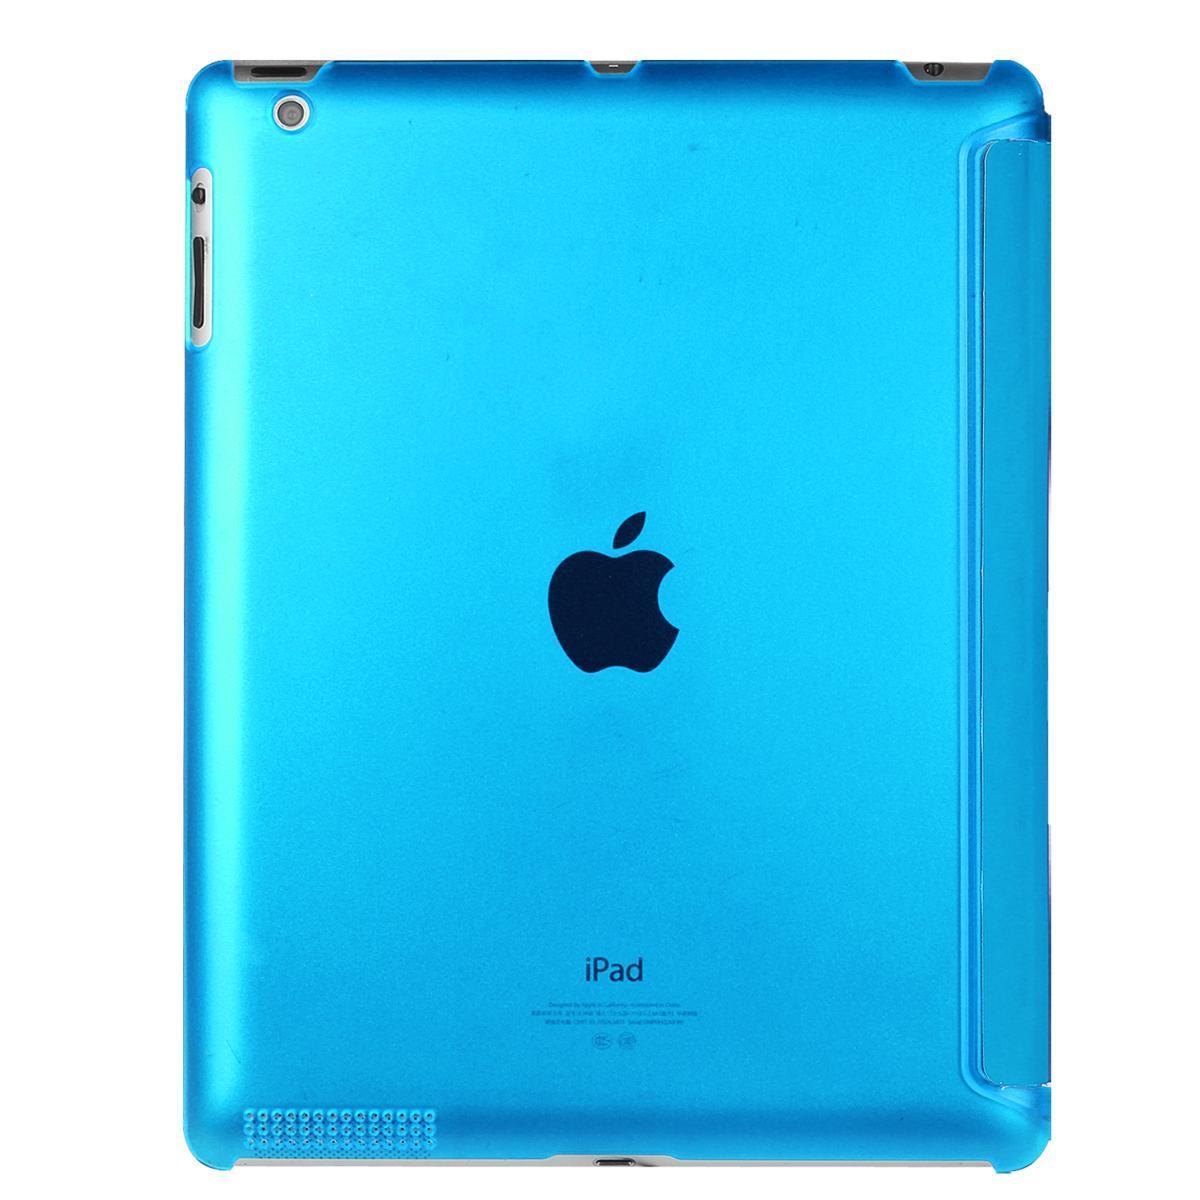 【送料無料】iPad 2/3/4 用 PUレザーケース スマートカバー 超薄 軽量型 スタンド機能 高品質PUレザーケース シーブルー_画像3